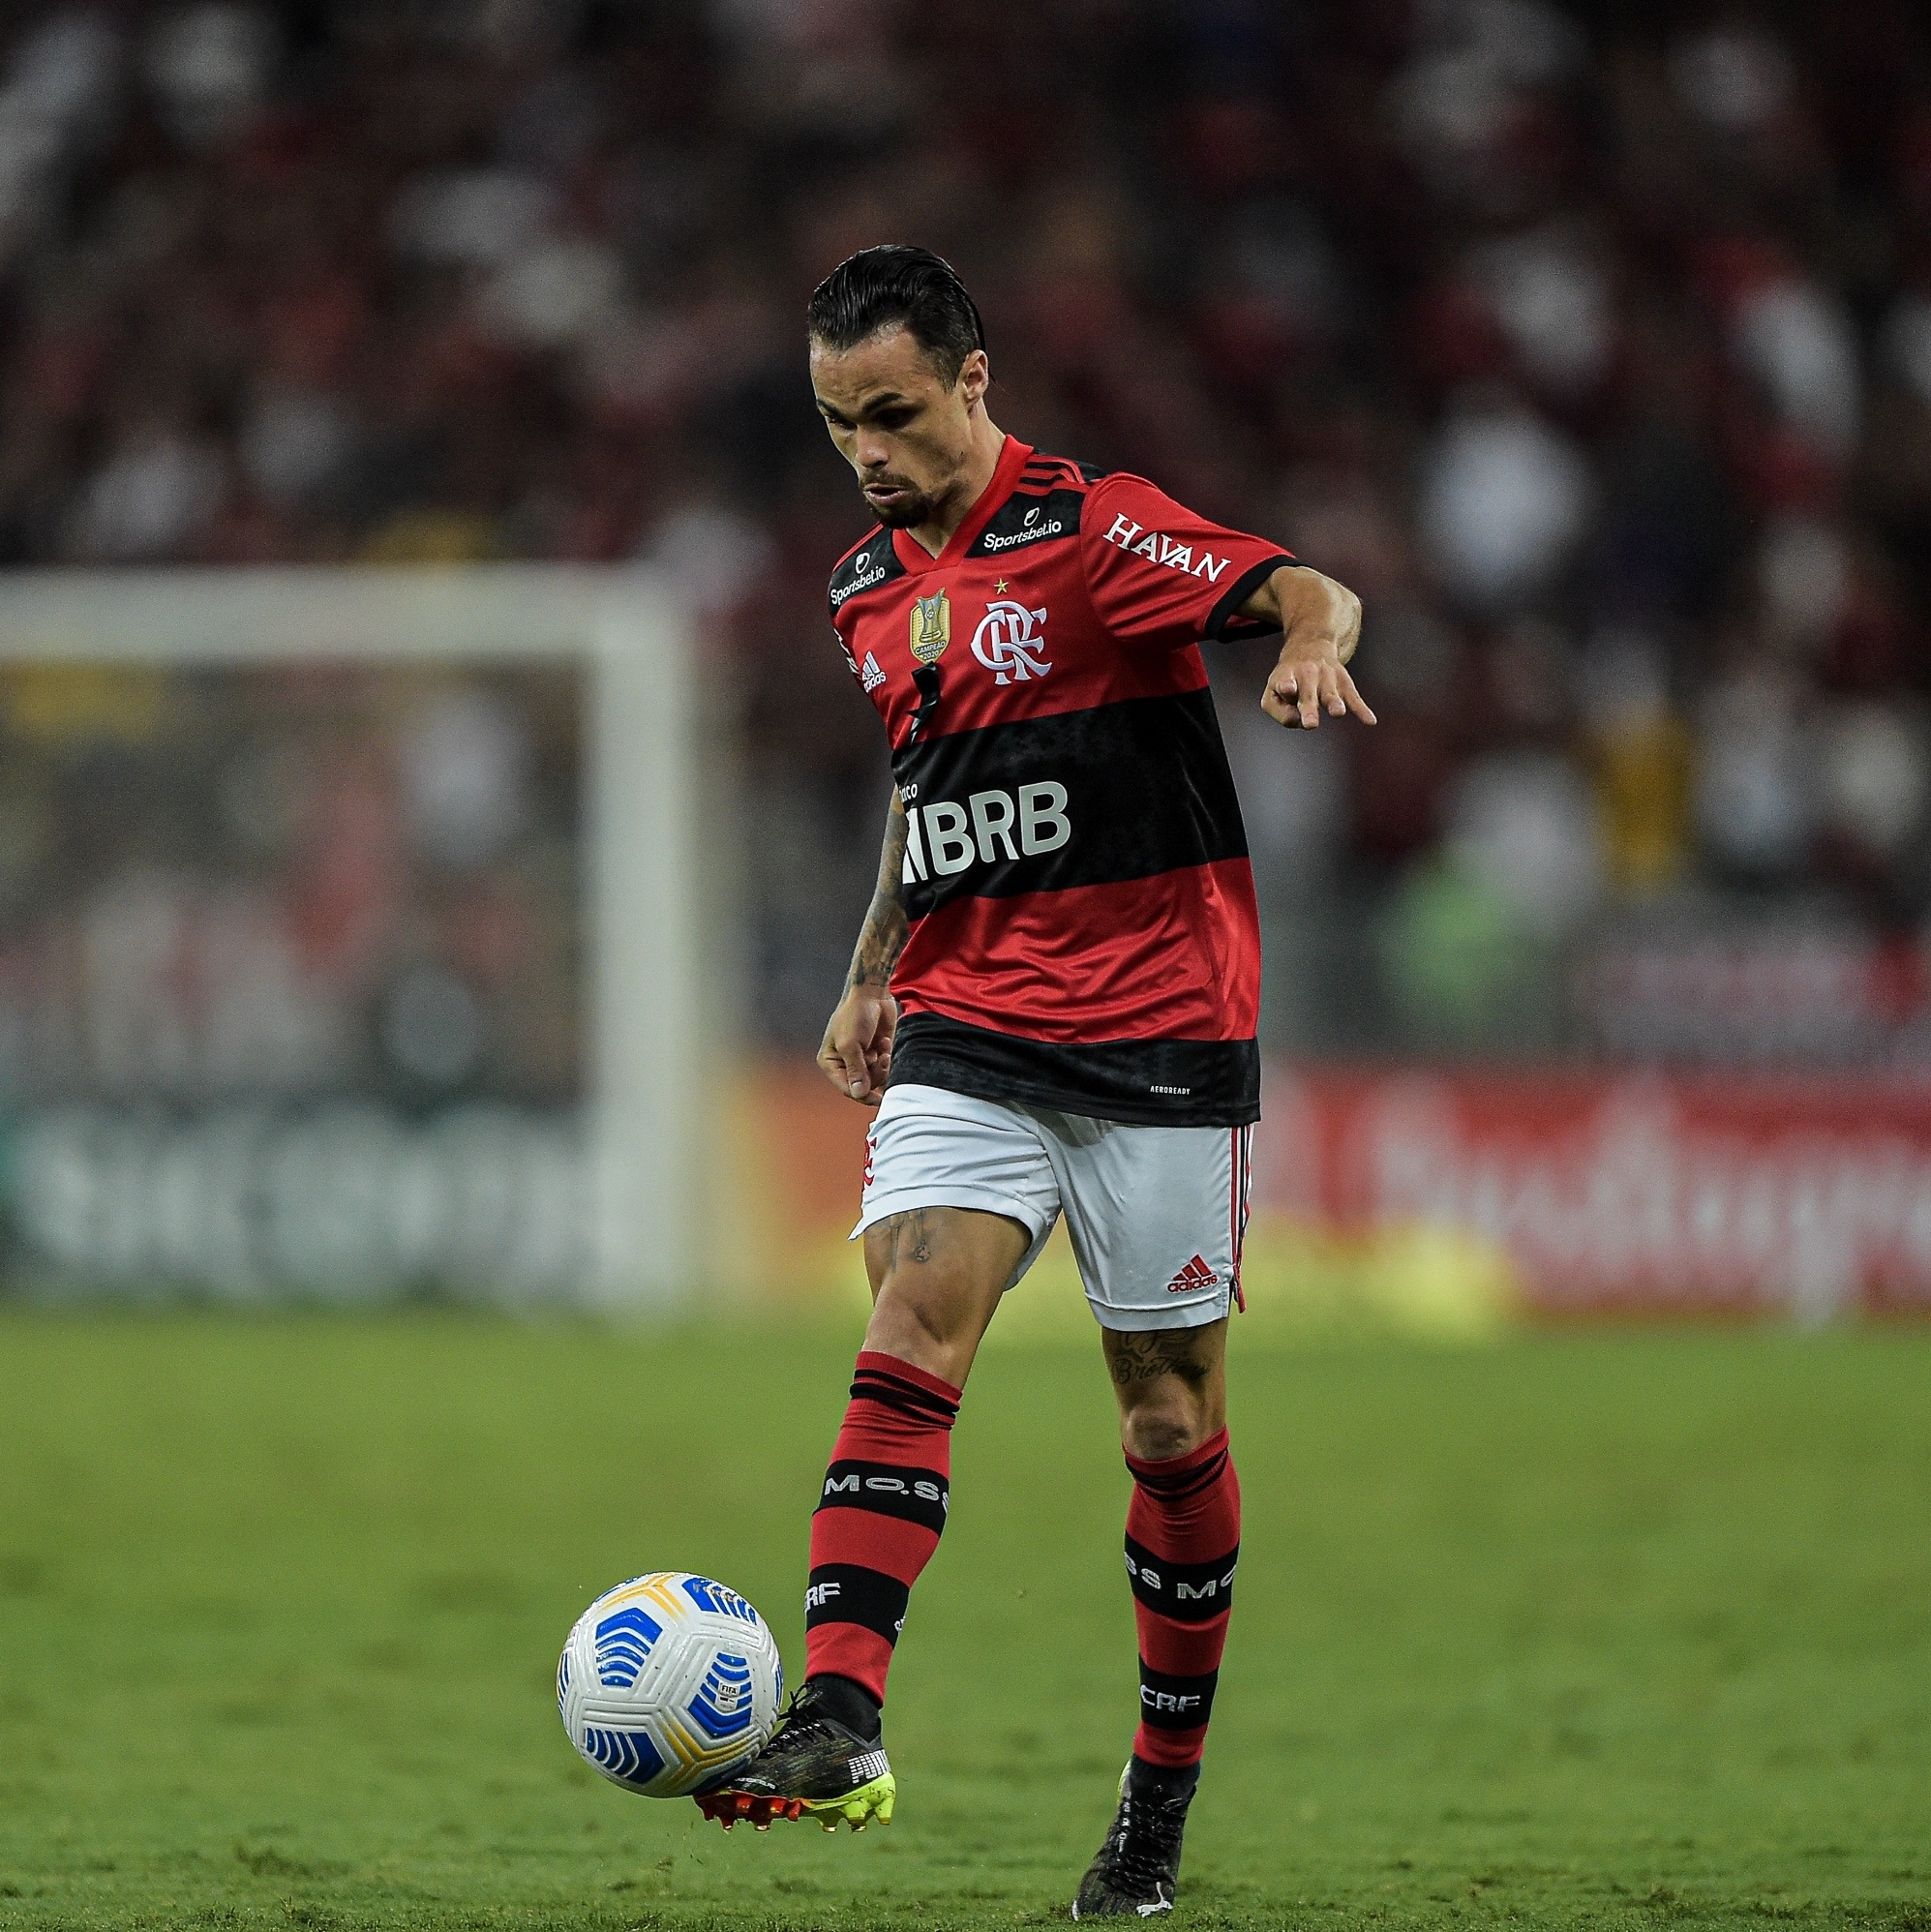 Edmundo exalta jogador do Flamengo: Destaque na temporada passada